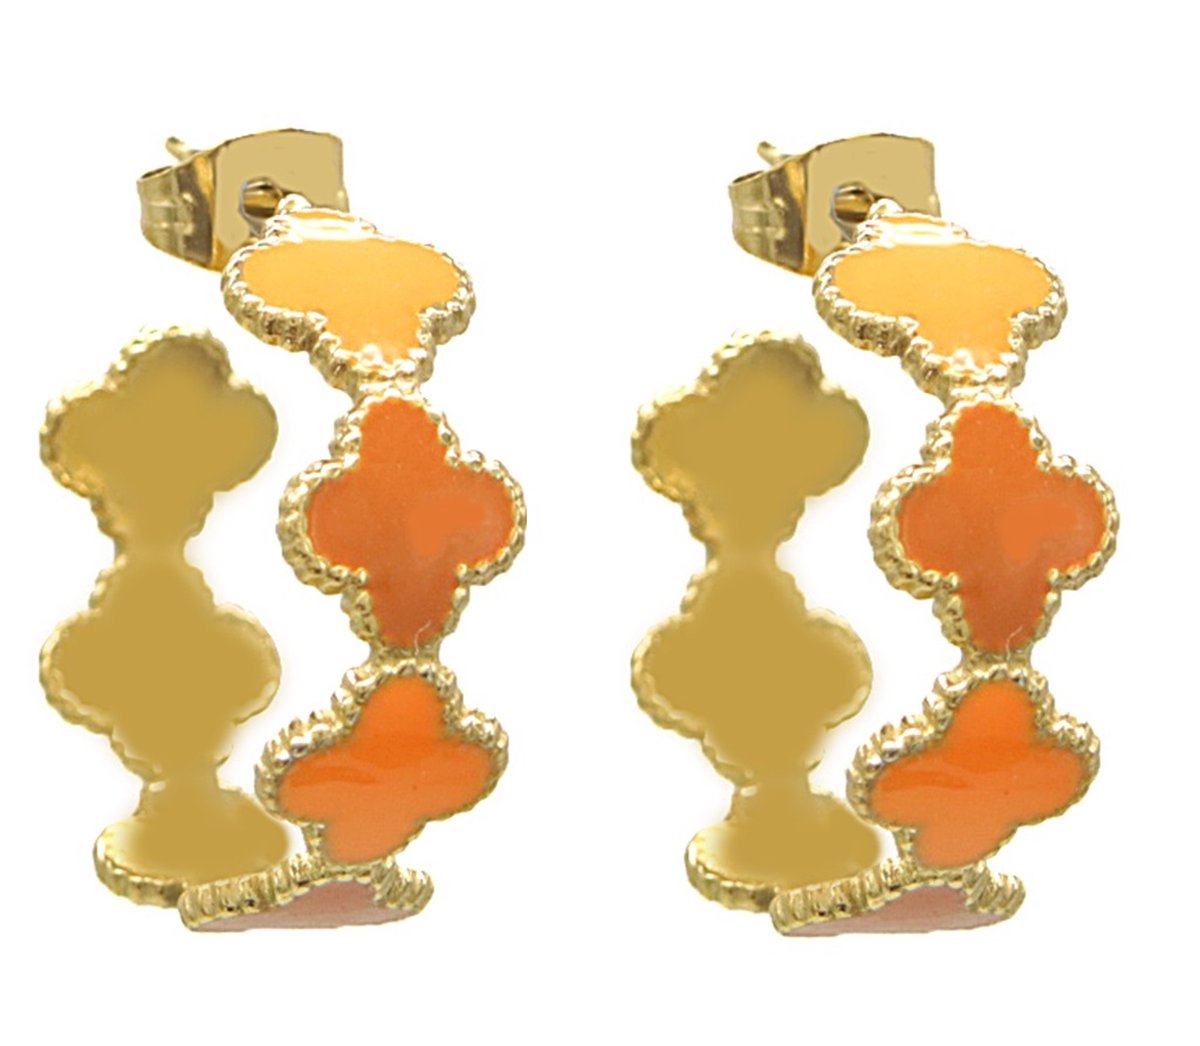 Oorbellen met Kruis - RVS - 2,2 cm - Goudkleurig en Oranje